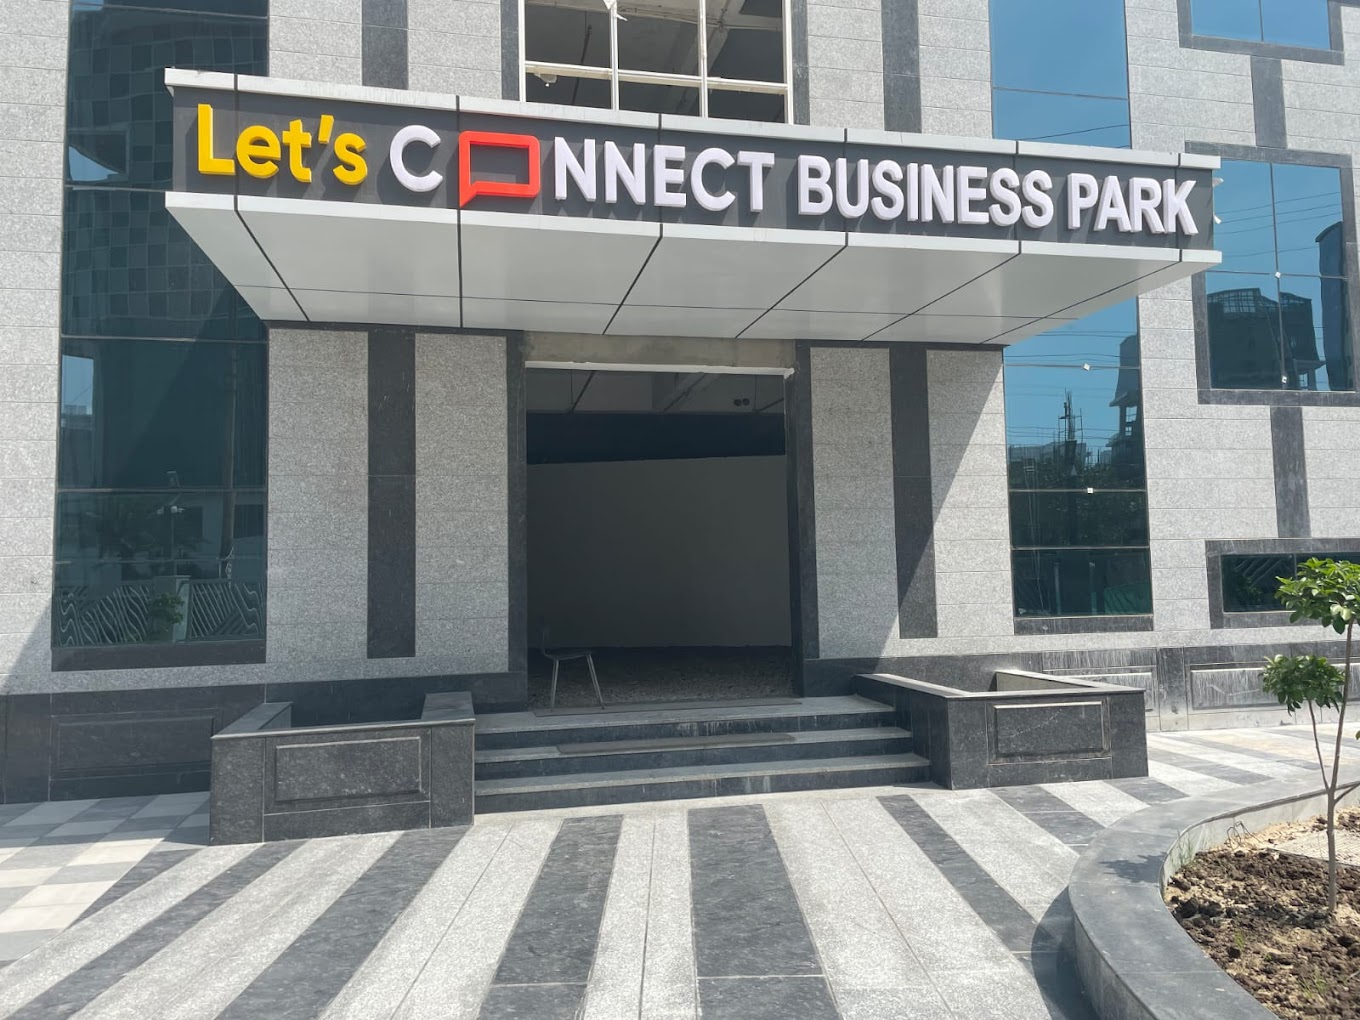 - Let's Connect Business Park